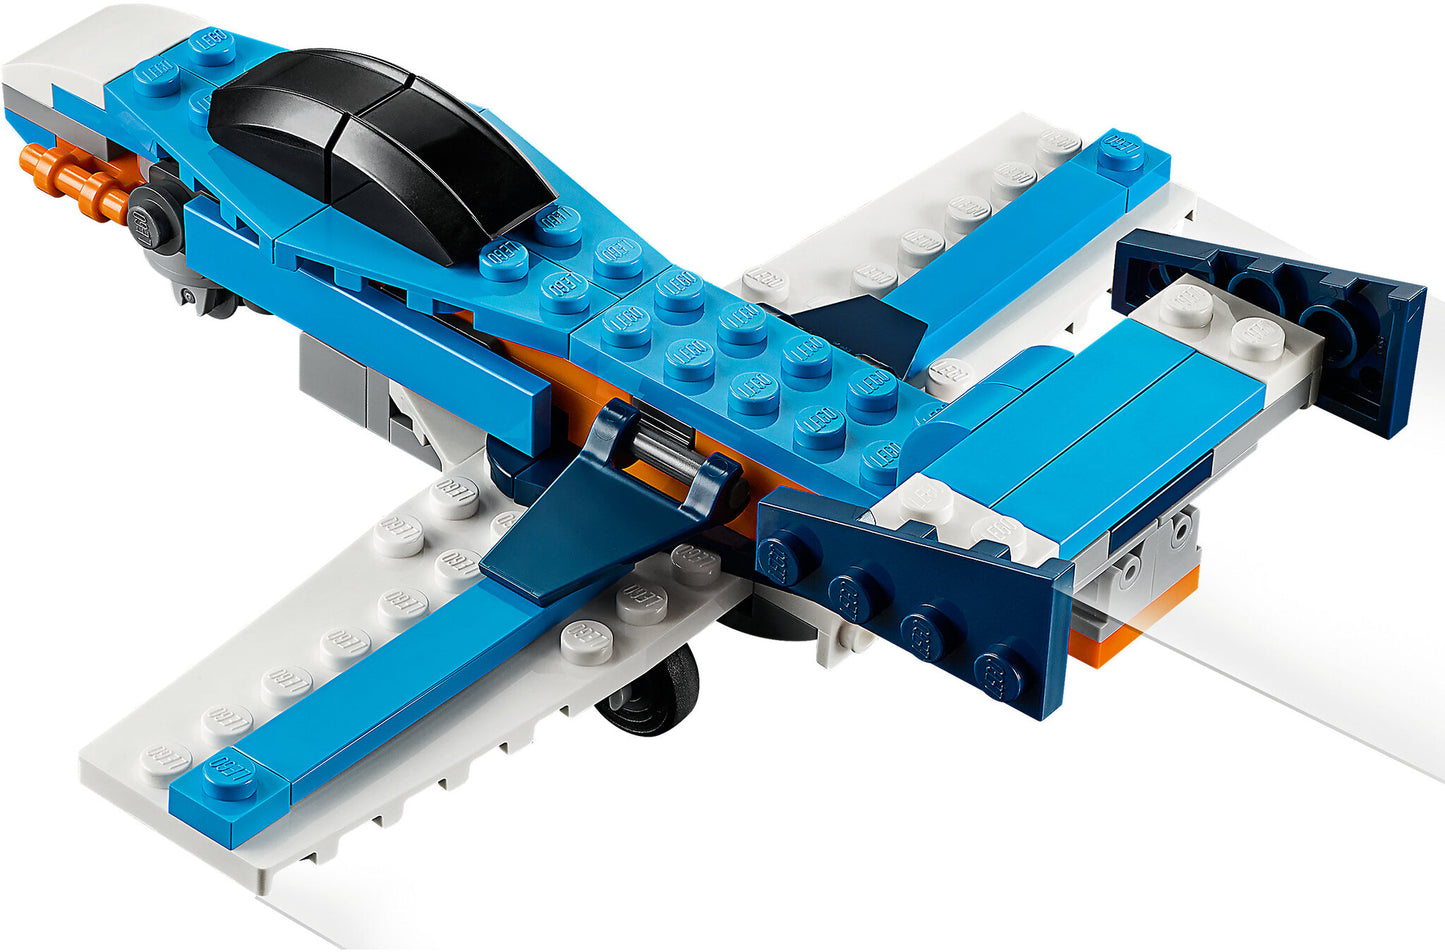 31099 LEGO Creator - Aereo a Elica